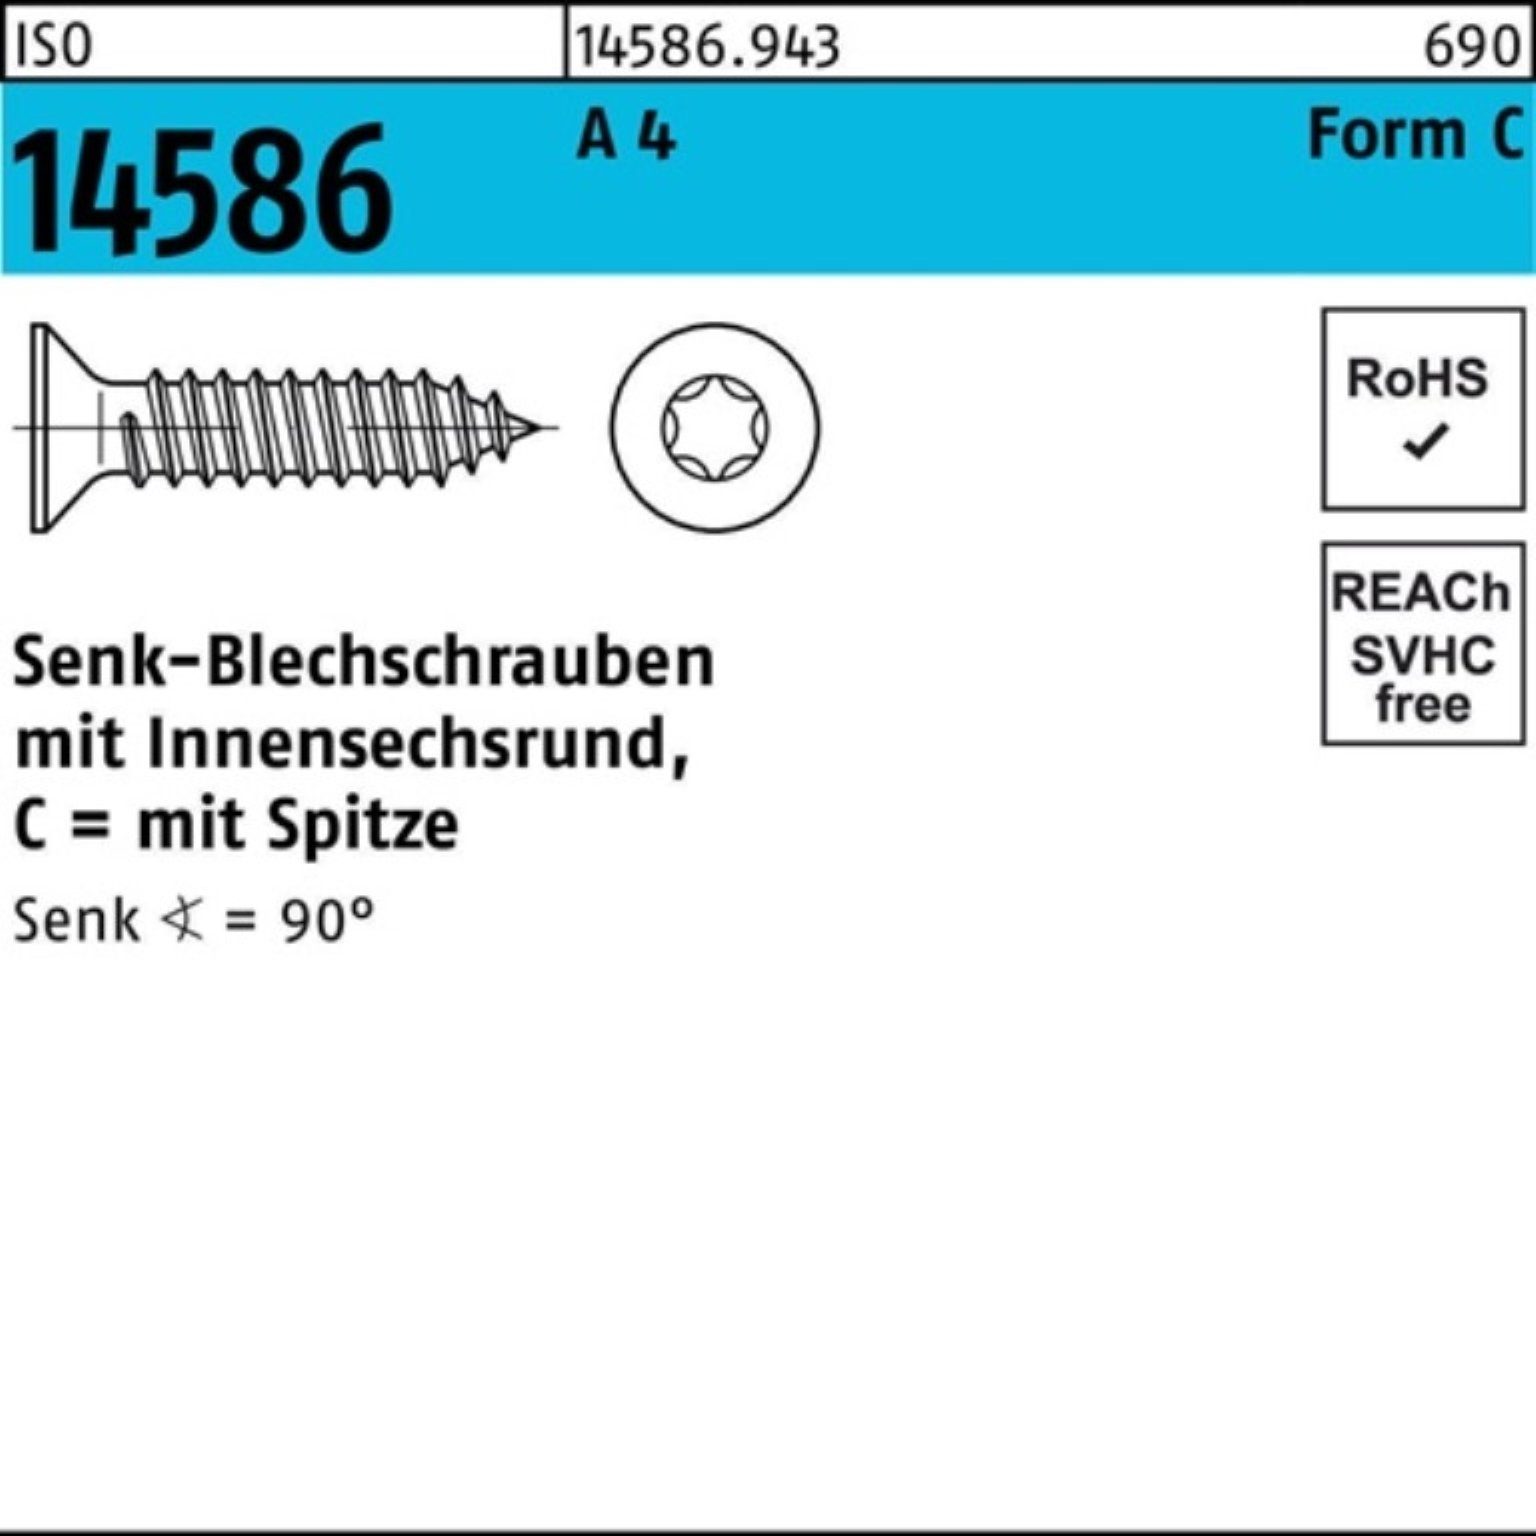 10 Reyher 1000er 4 14586 Pack ISR/Spitze ISO Schraube Senkblechschraube A 3,5x 9,5-T15